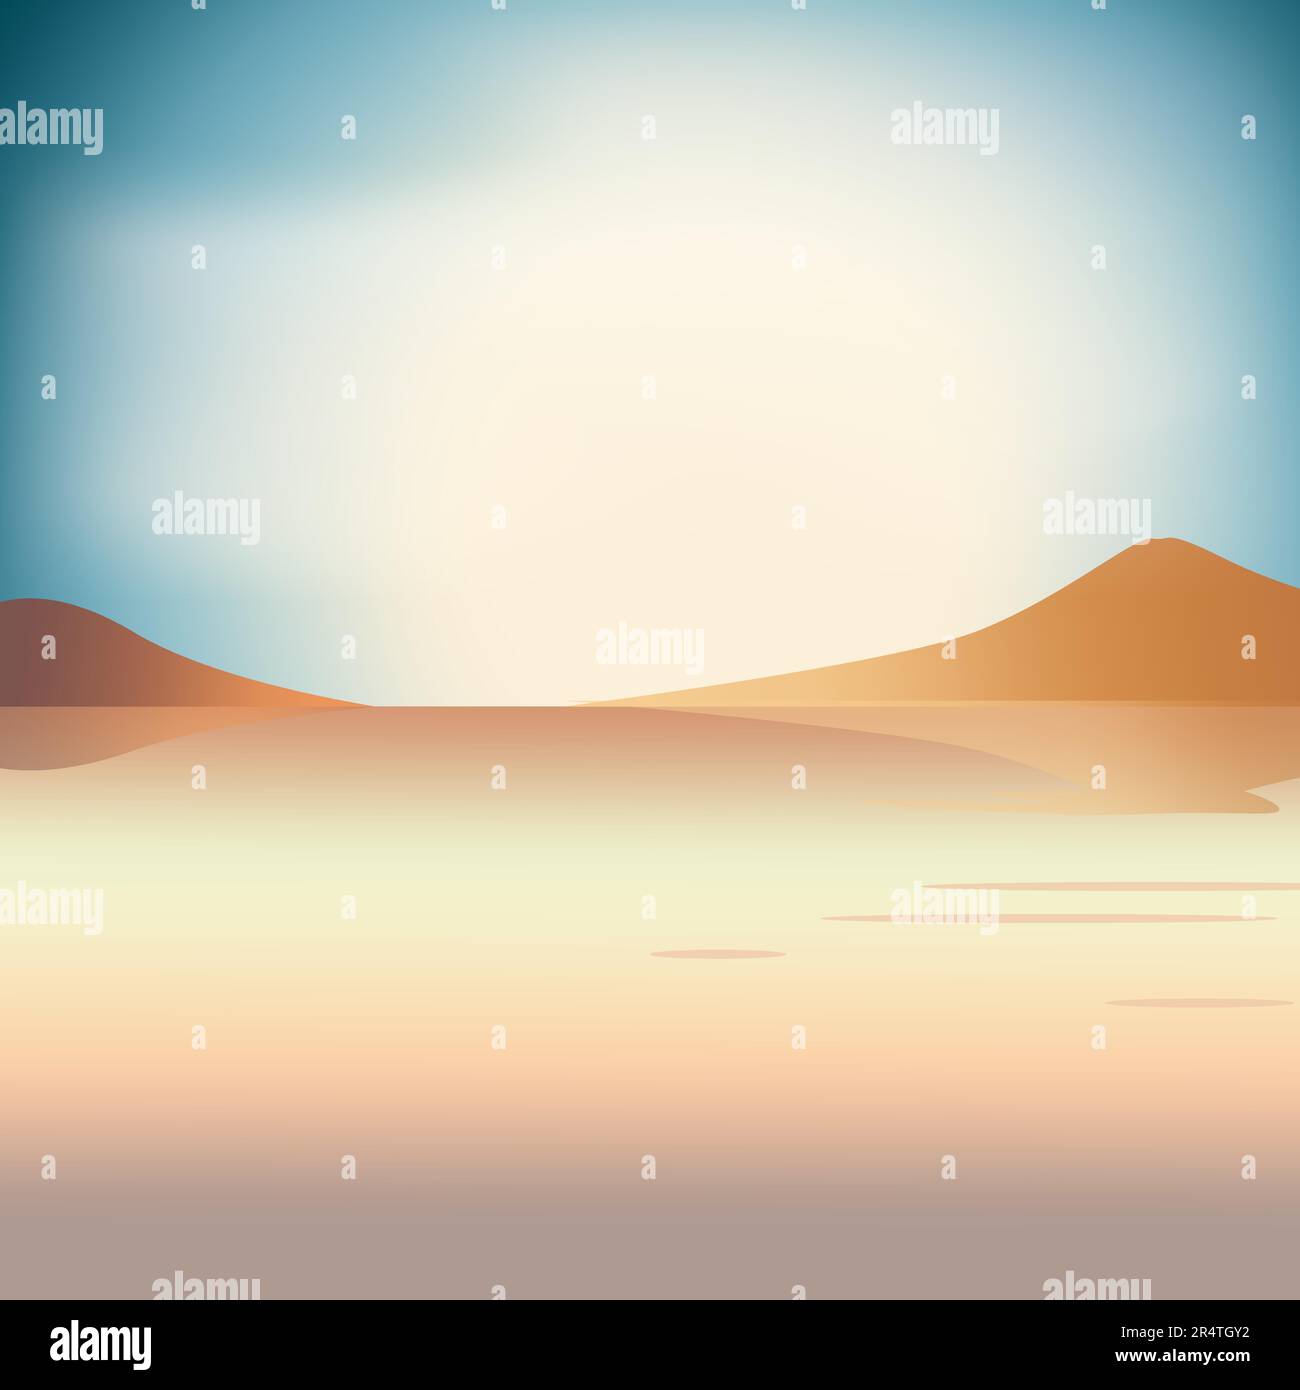 Vettore del deserto del Pan di zucchero nel riflesso di un lago d'acqua Illustrazione Vettoriale